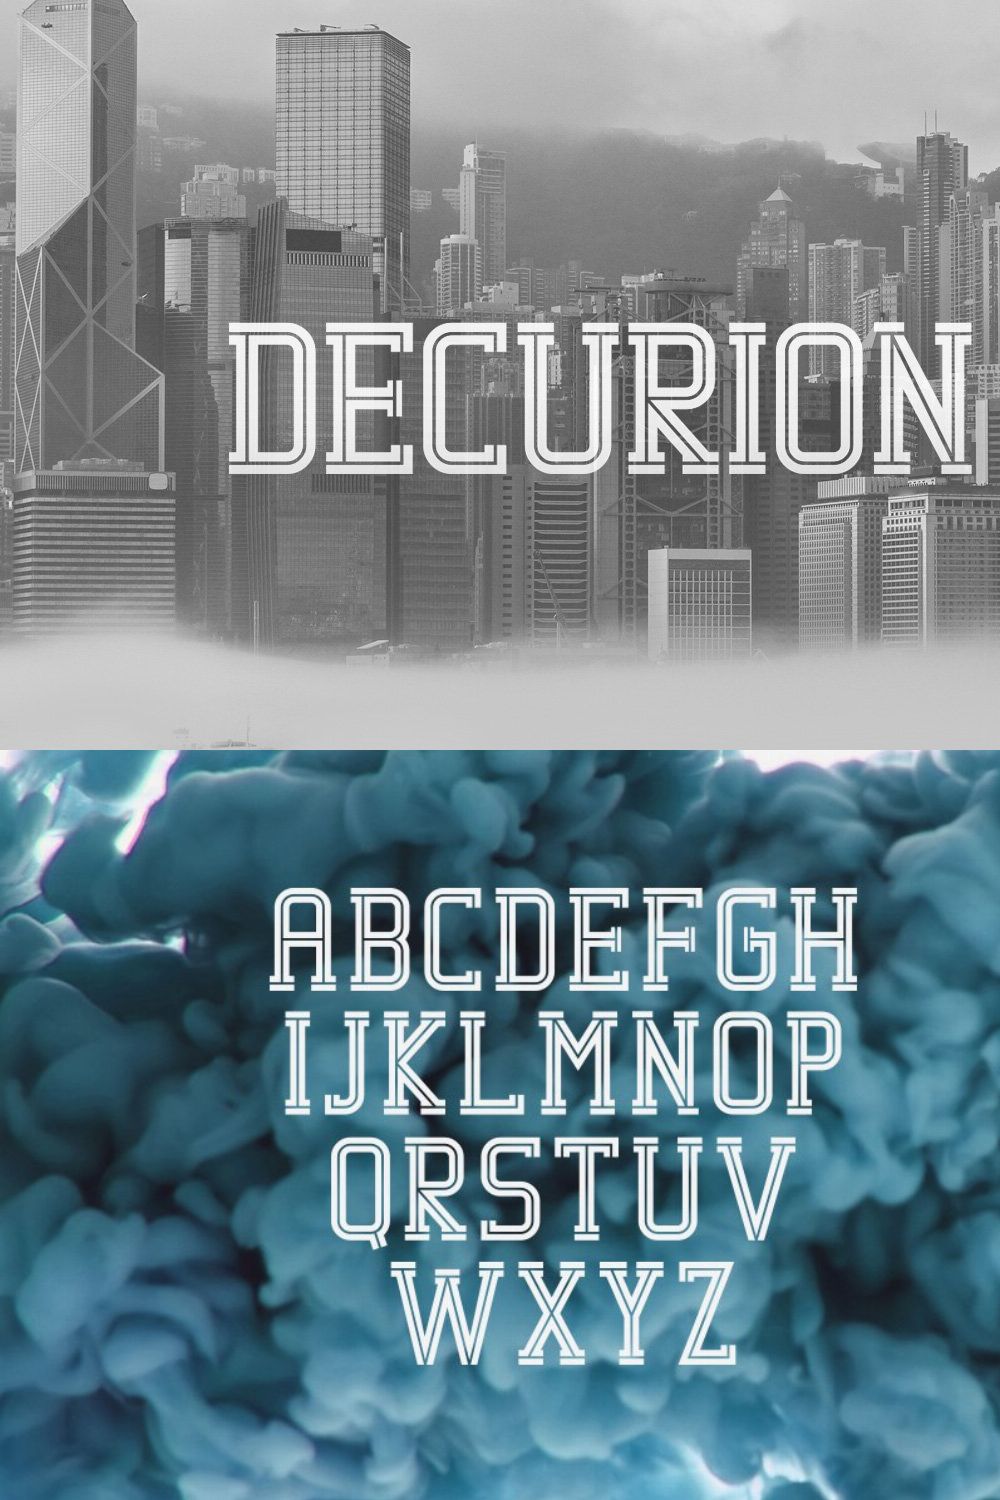 Decurion Typeface pinterest preview image.